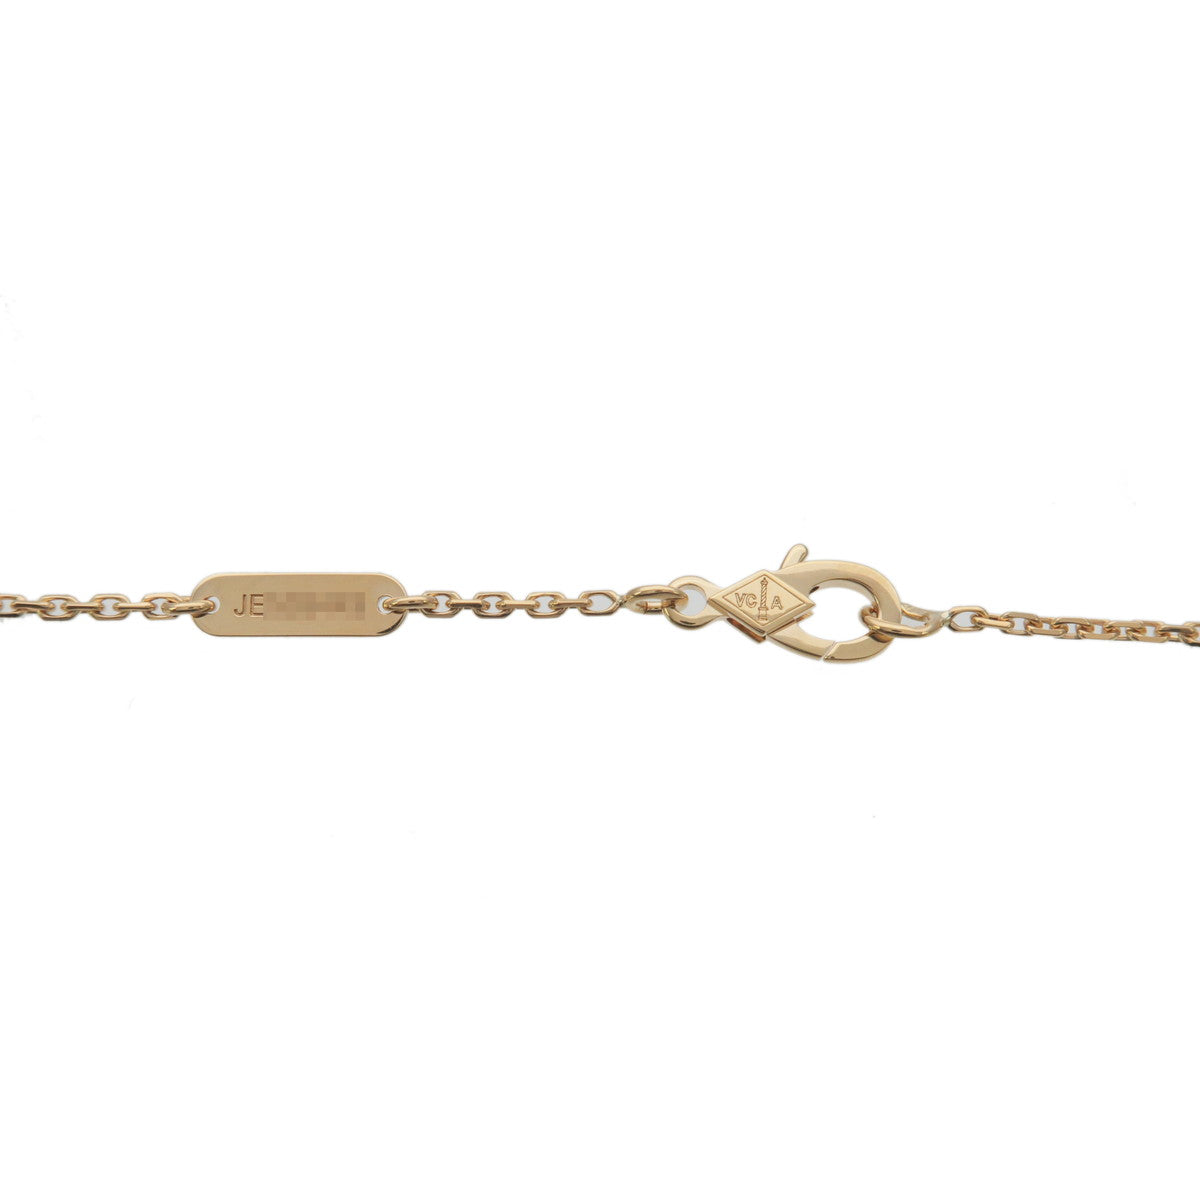 Polished Van Cleef & Arpels Vintage Alhambra Necklace Onyx